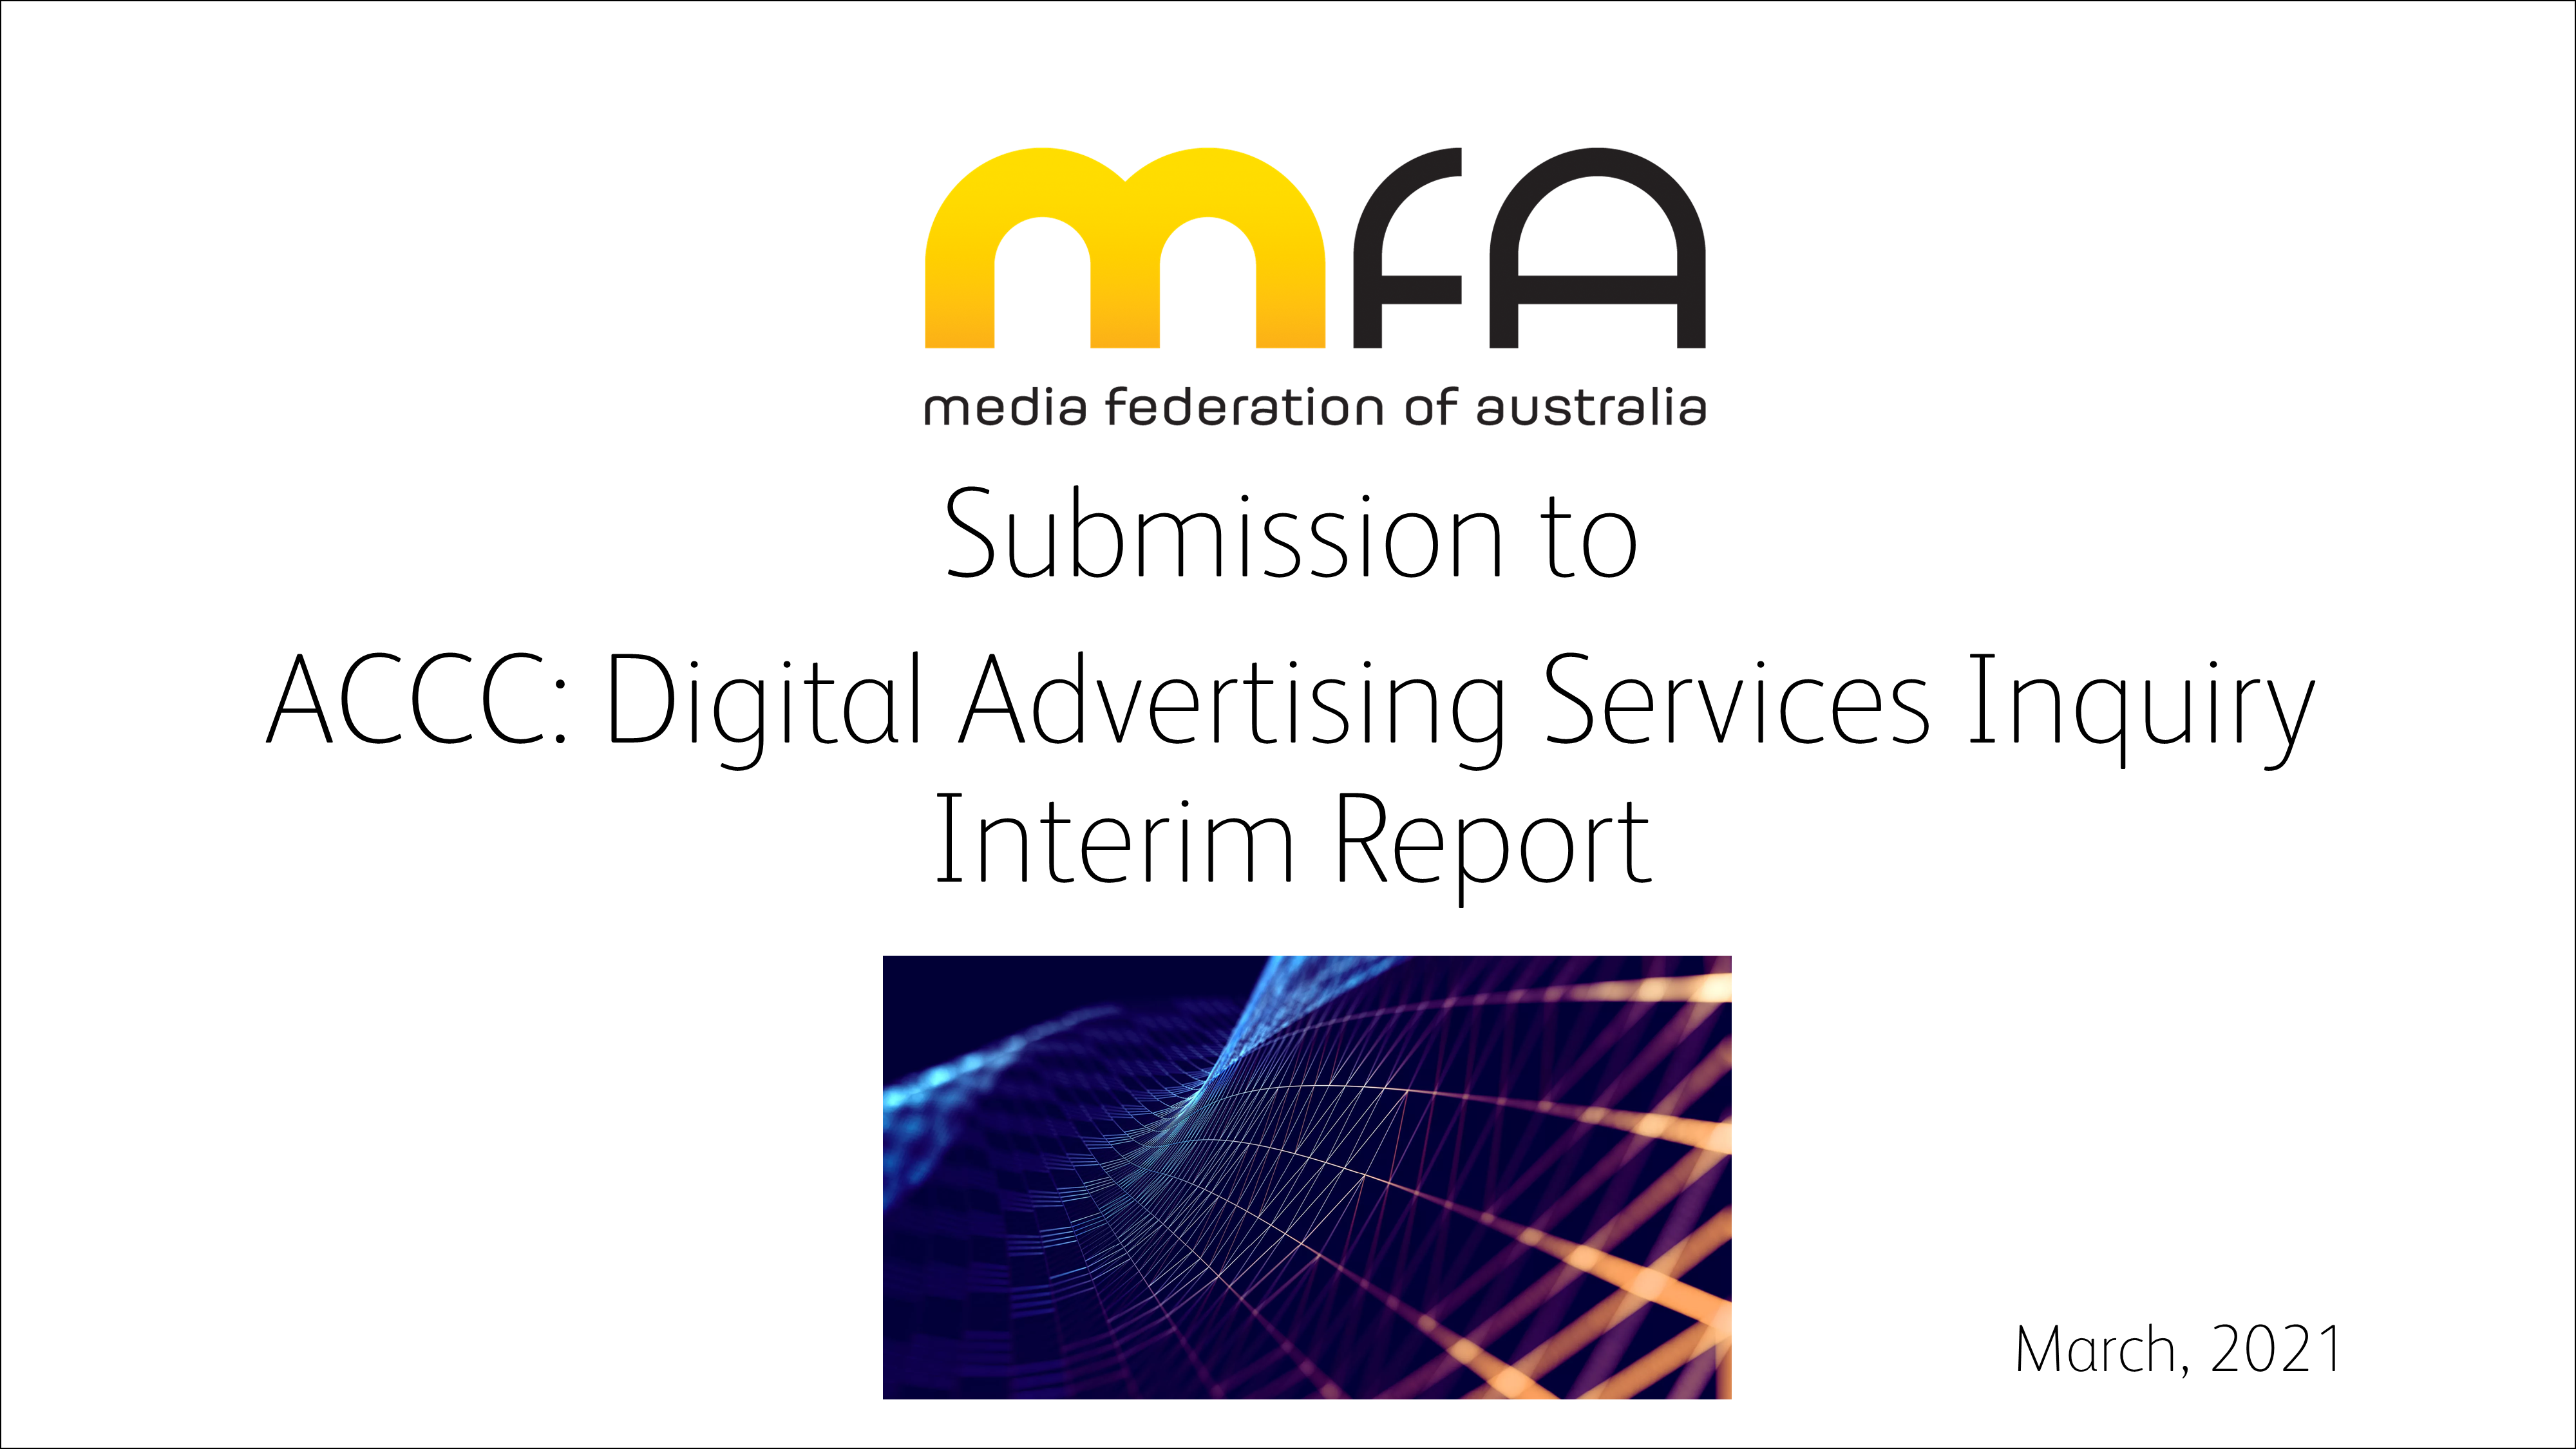 ACCC: Digital Advertising Services Inquiry Interim Report